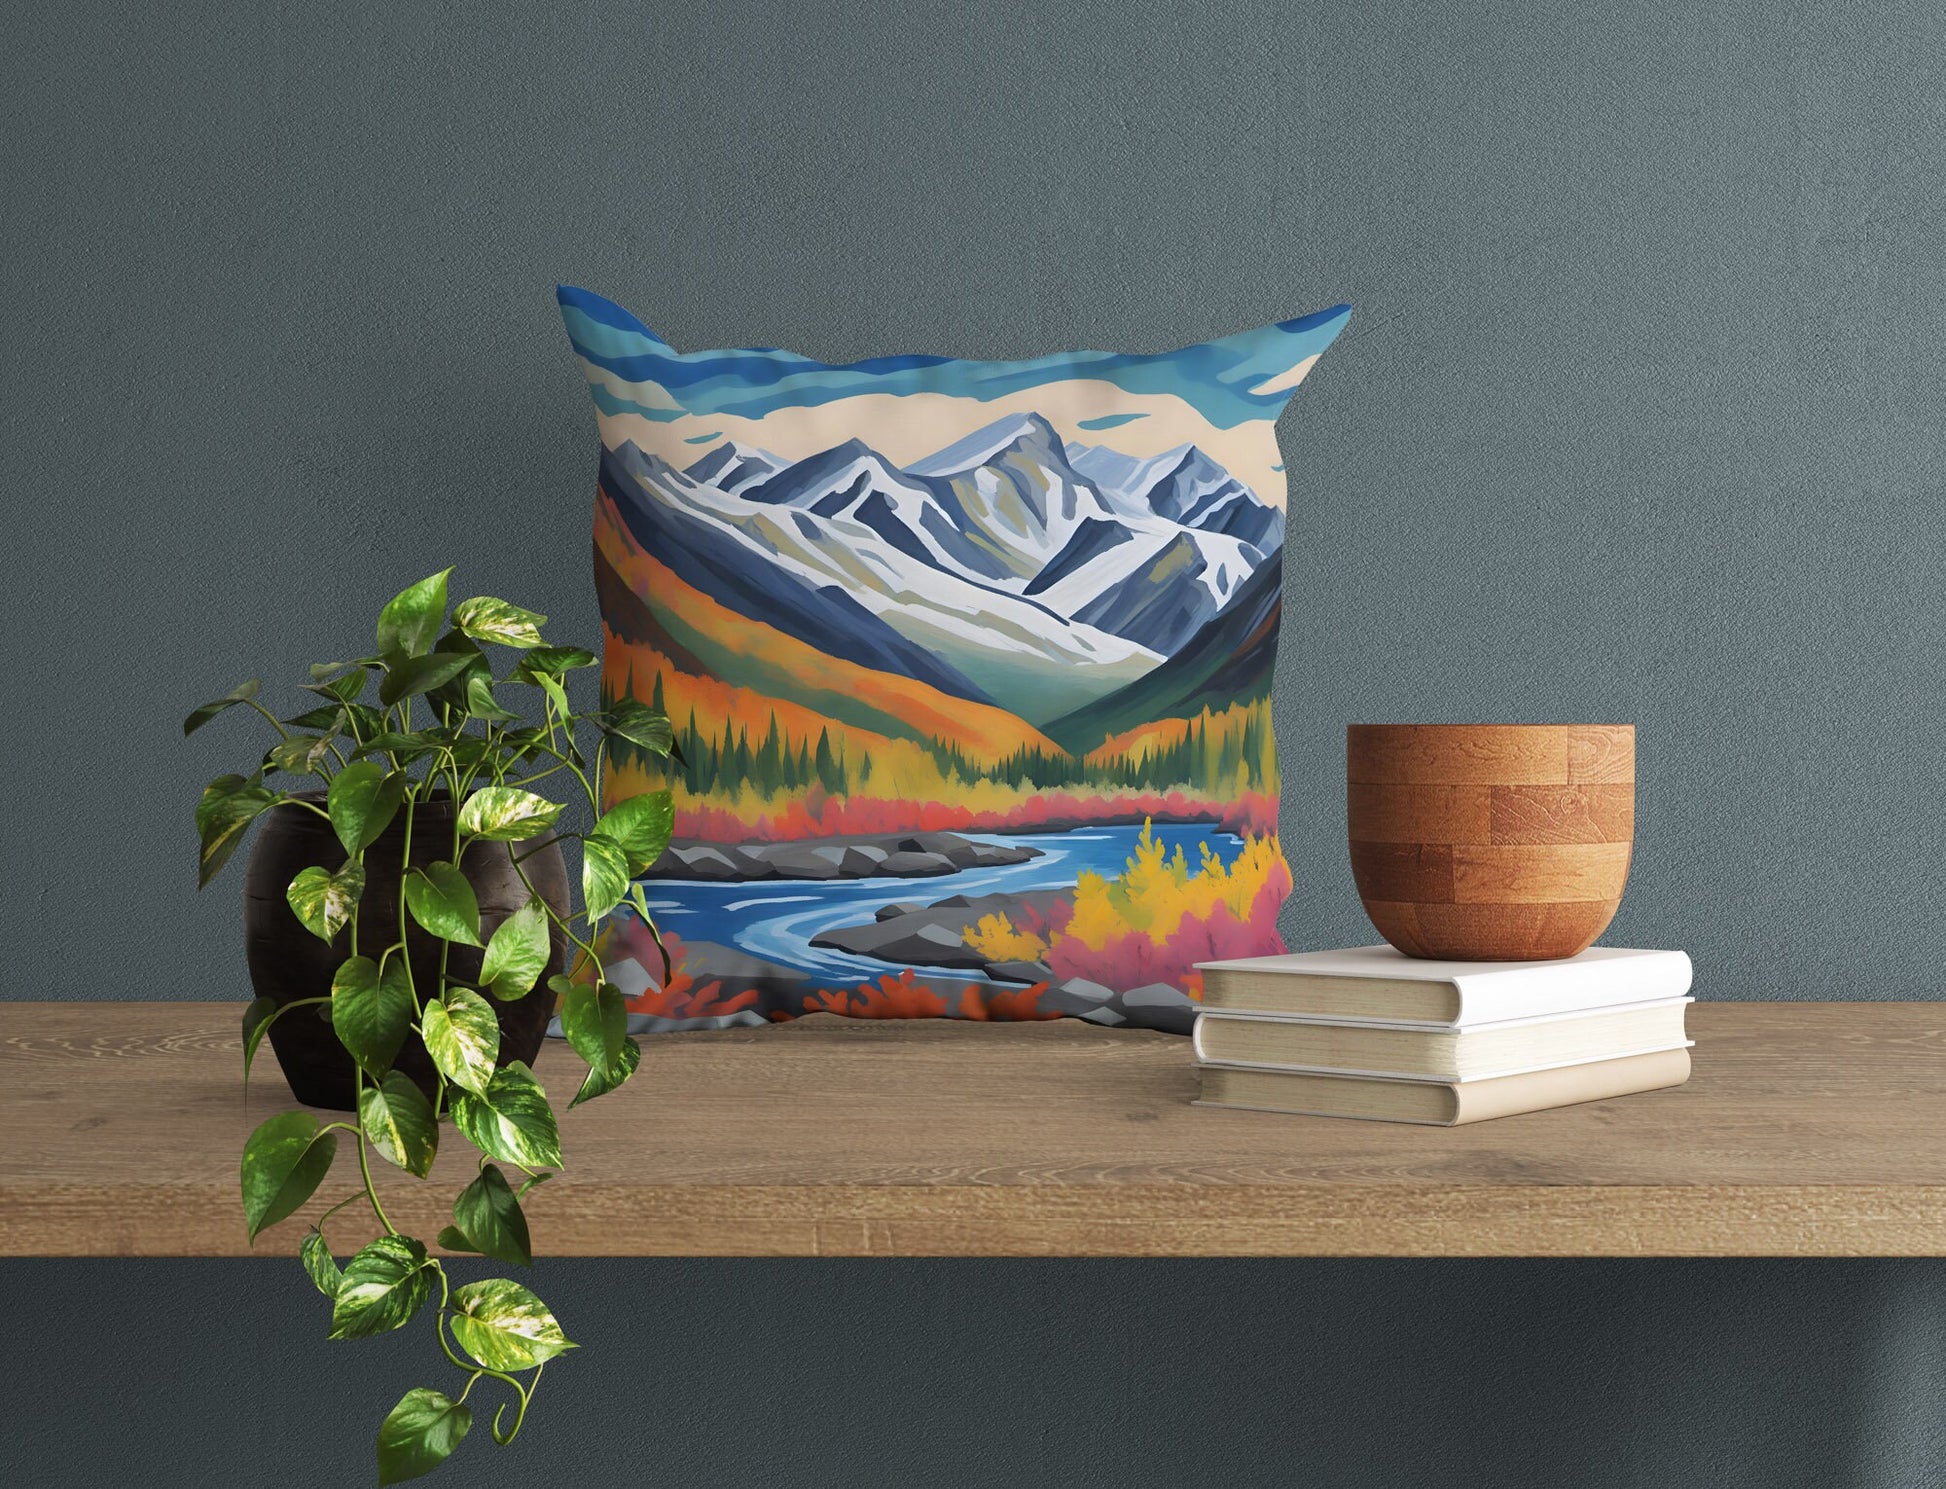 Wrangell-St. Elias National Park Alaska, Tapestry Pillows, Usa Travel Pillow, Artist Pillow, 20X20 Pillow, Home Decor Pillow, Holiday Gift